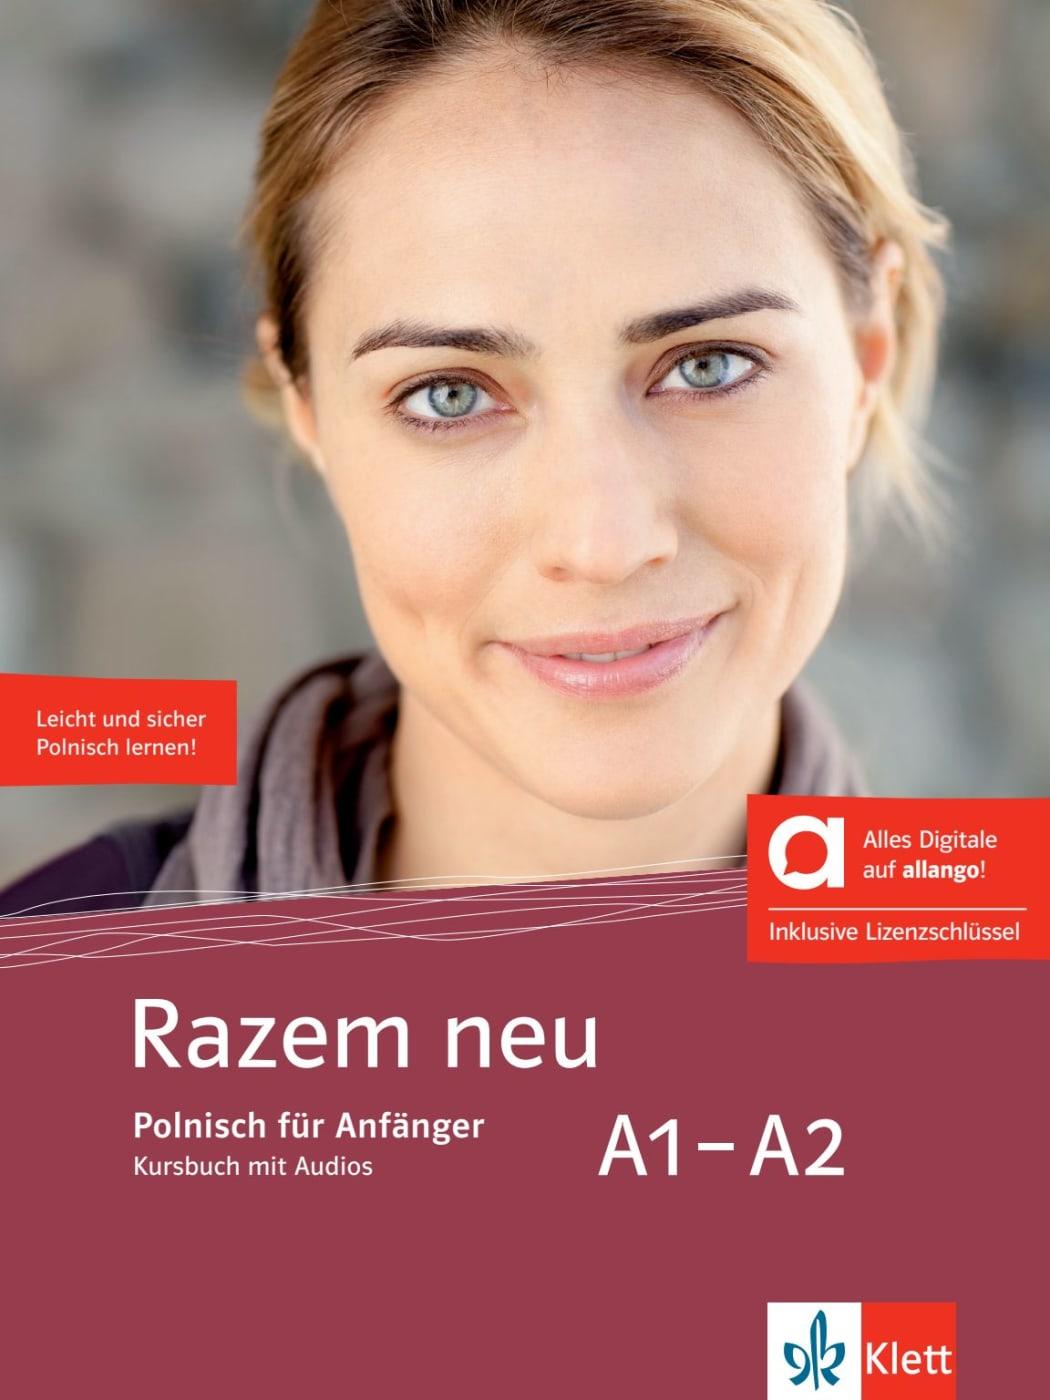 Carte Razem neu A1-A2 - Hybride Ausgabe allango, m. 1 Beilage 